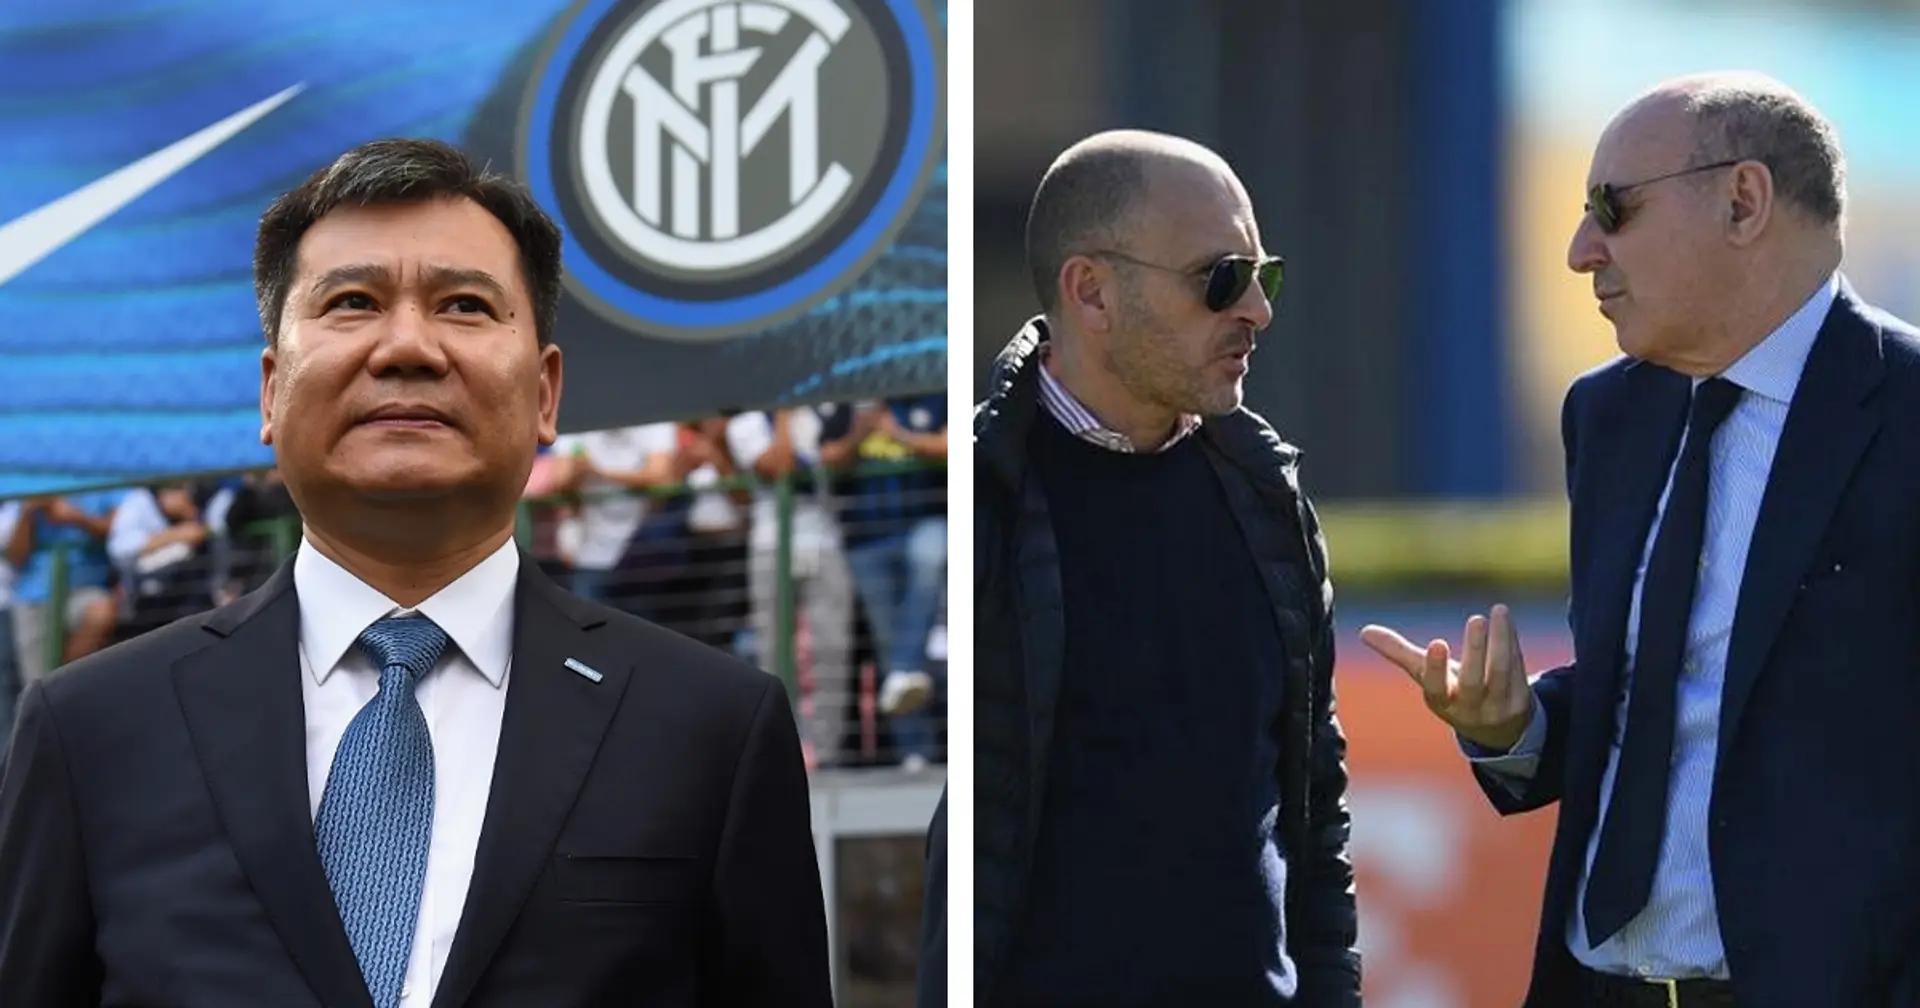 L'Inter ha centrato gli obiettivi chiesti da Suning: bilancio in attivo di circa 120 milioni, e monte ingaggi ridotto